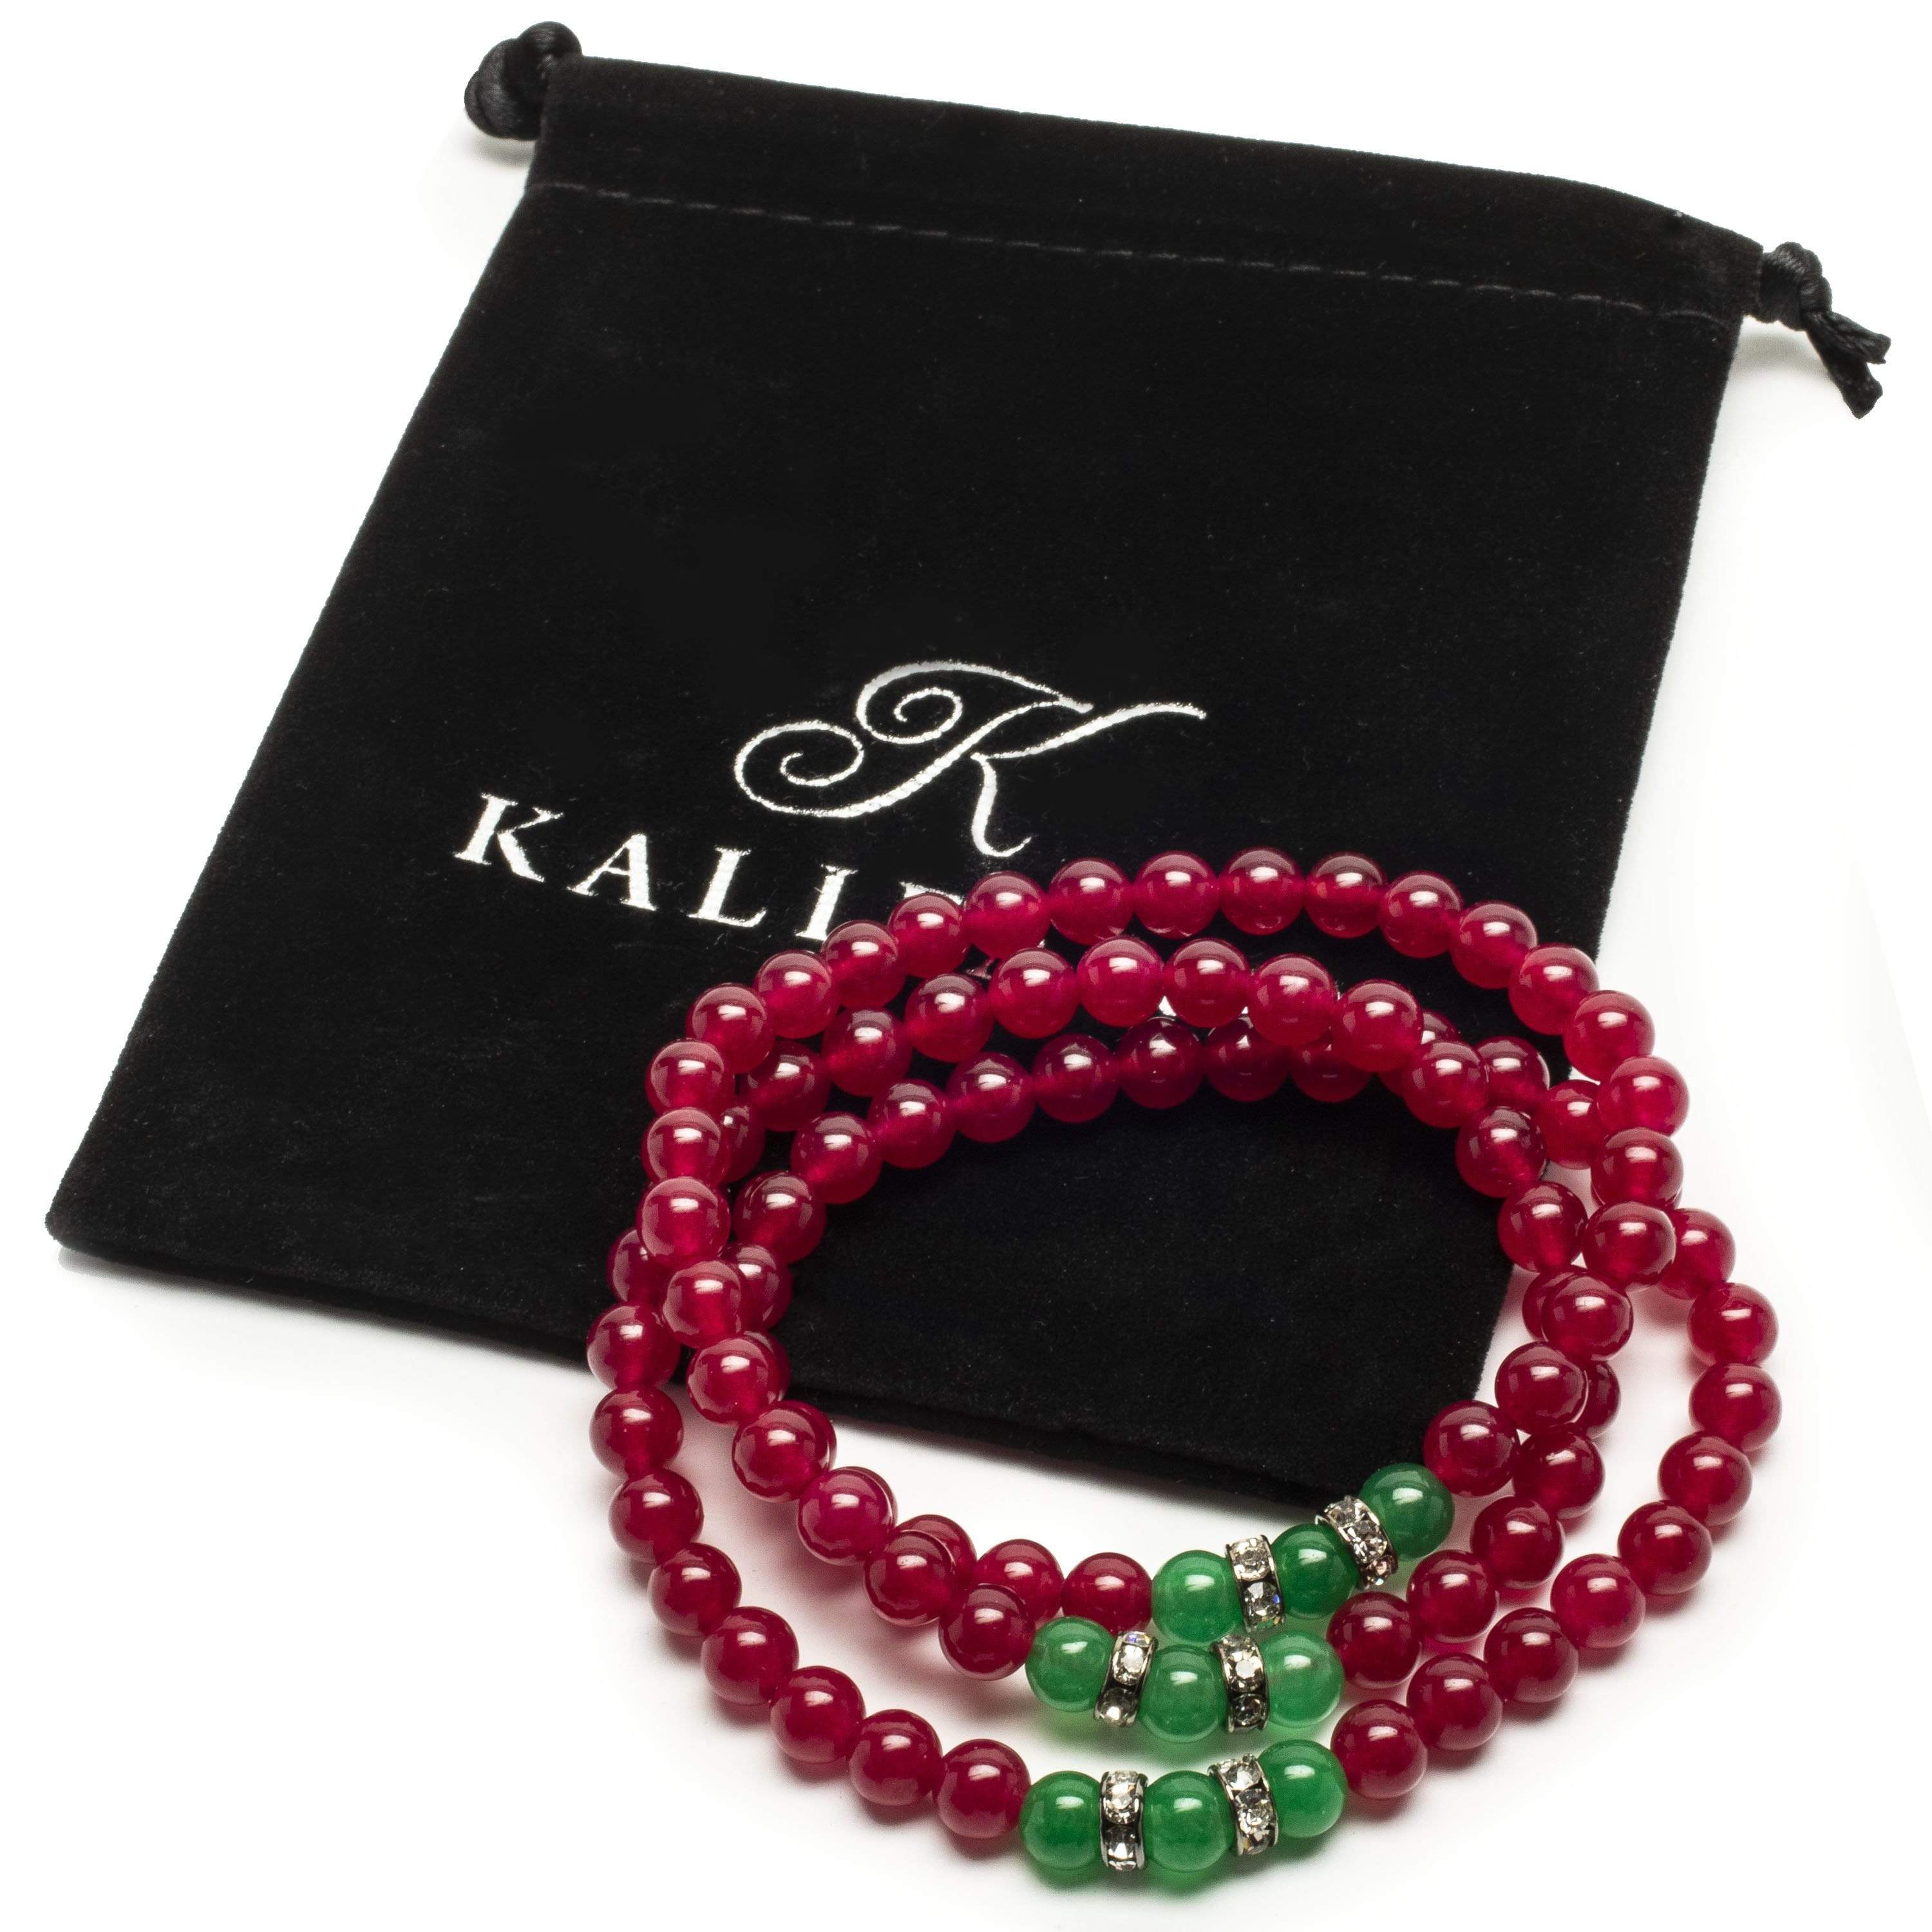 Kalifano Gemstone Bracelets Fuchsia Agate 6mm Beads with Aventurine and Crystal Accent Beads Triple Wrap Elastic Gemstone Bracelet WHITE-BGI3-033